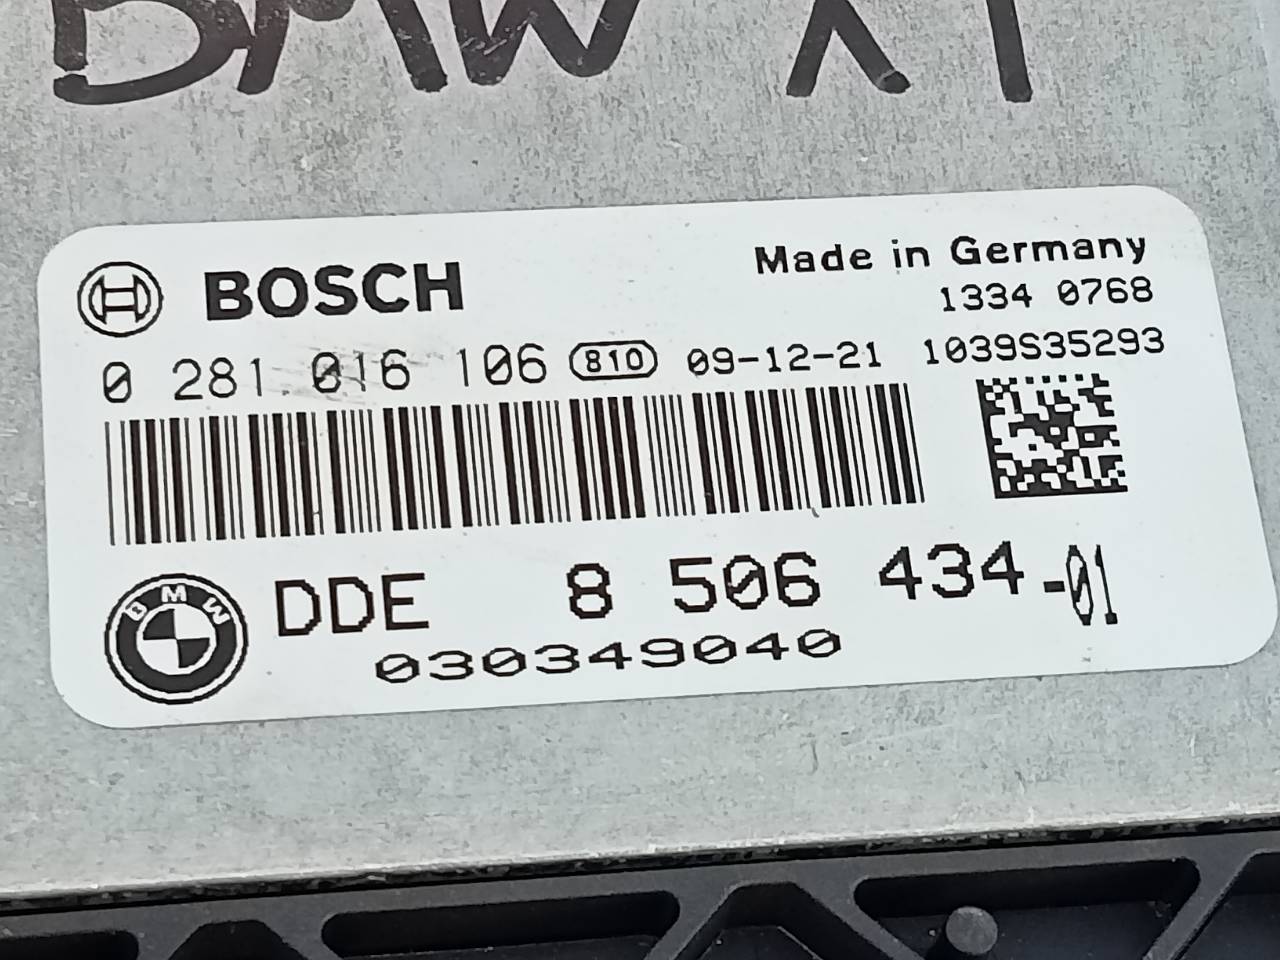 BMW X1 E84 (2009-2015) Блок управления двигателем 8506434, 0281016106, E3-A2-24-1 20966174